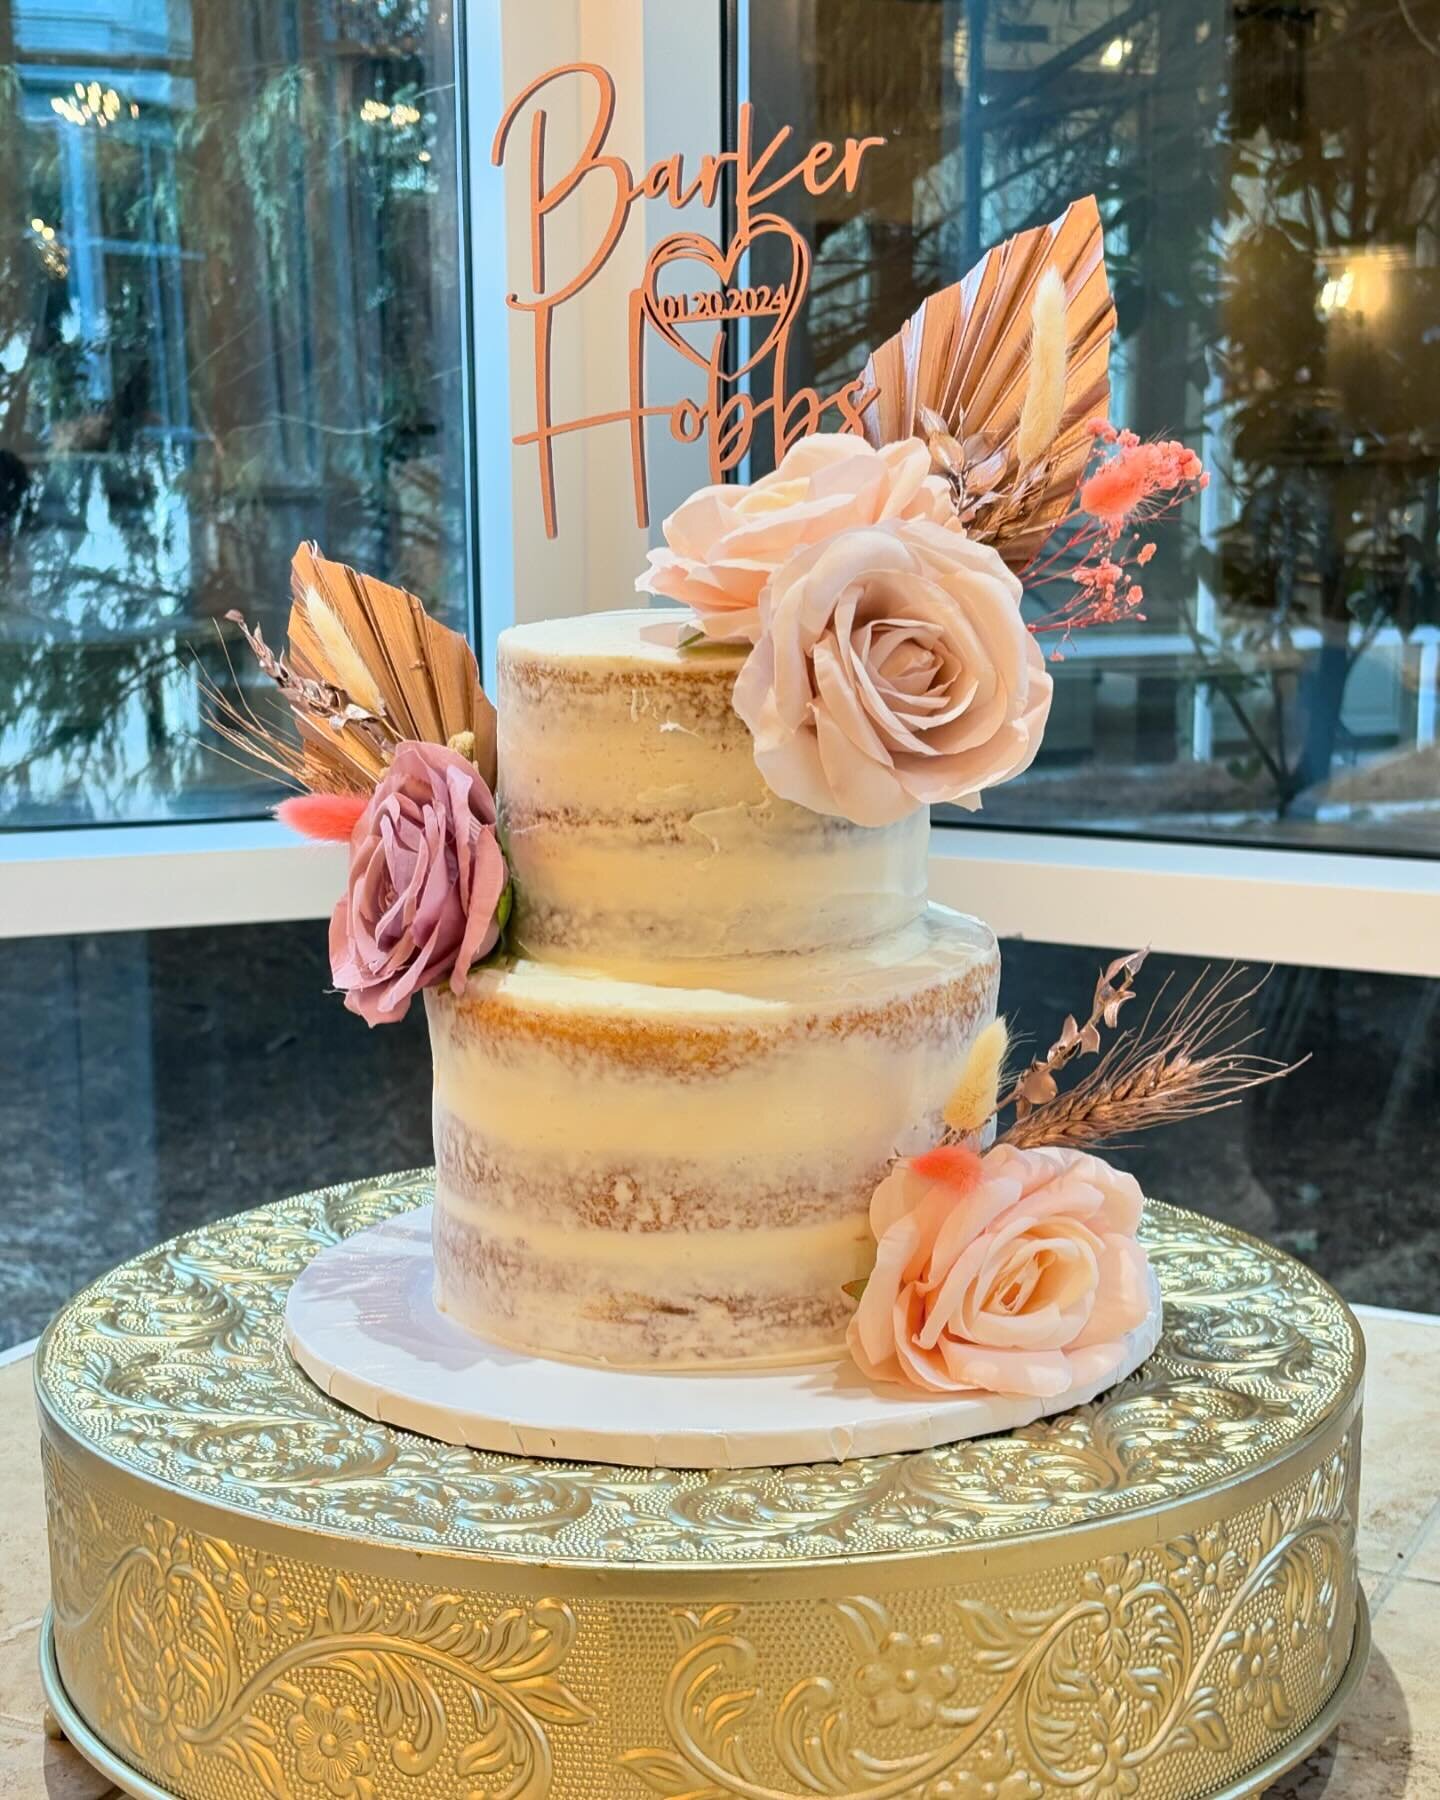 Naked iced boho themed cake with a cupcake tower 
.
.
.
.
.
.
#weddingcakebaker #weddingcakemaker #custombakery #buttercreamweddingcake #eventcake #weddingsandevents #rusticweddingcake #weddingprofessional #buttercreamcakedesign #weddingcakesofinstag